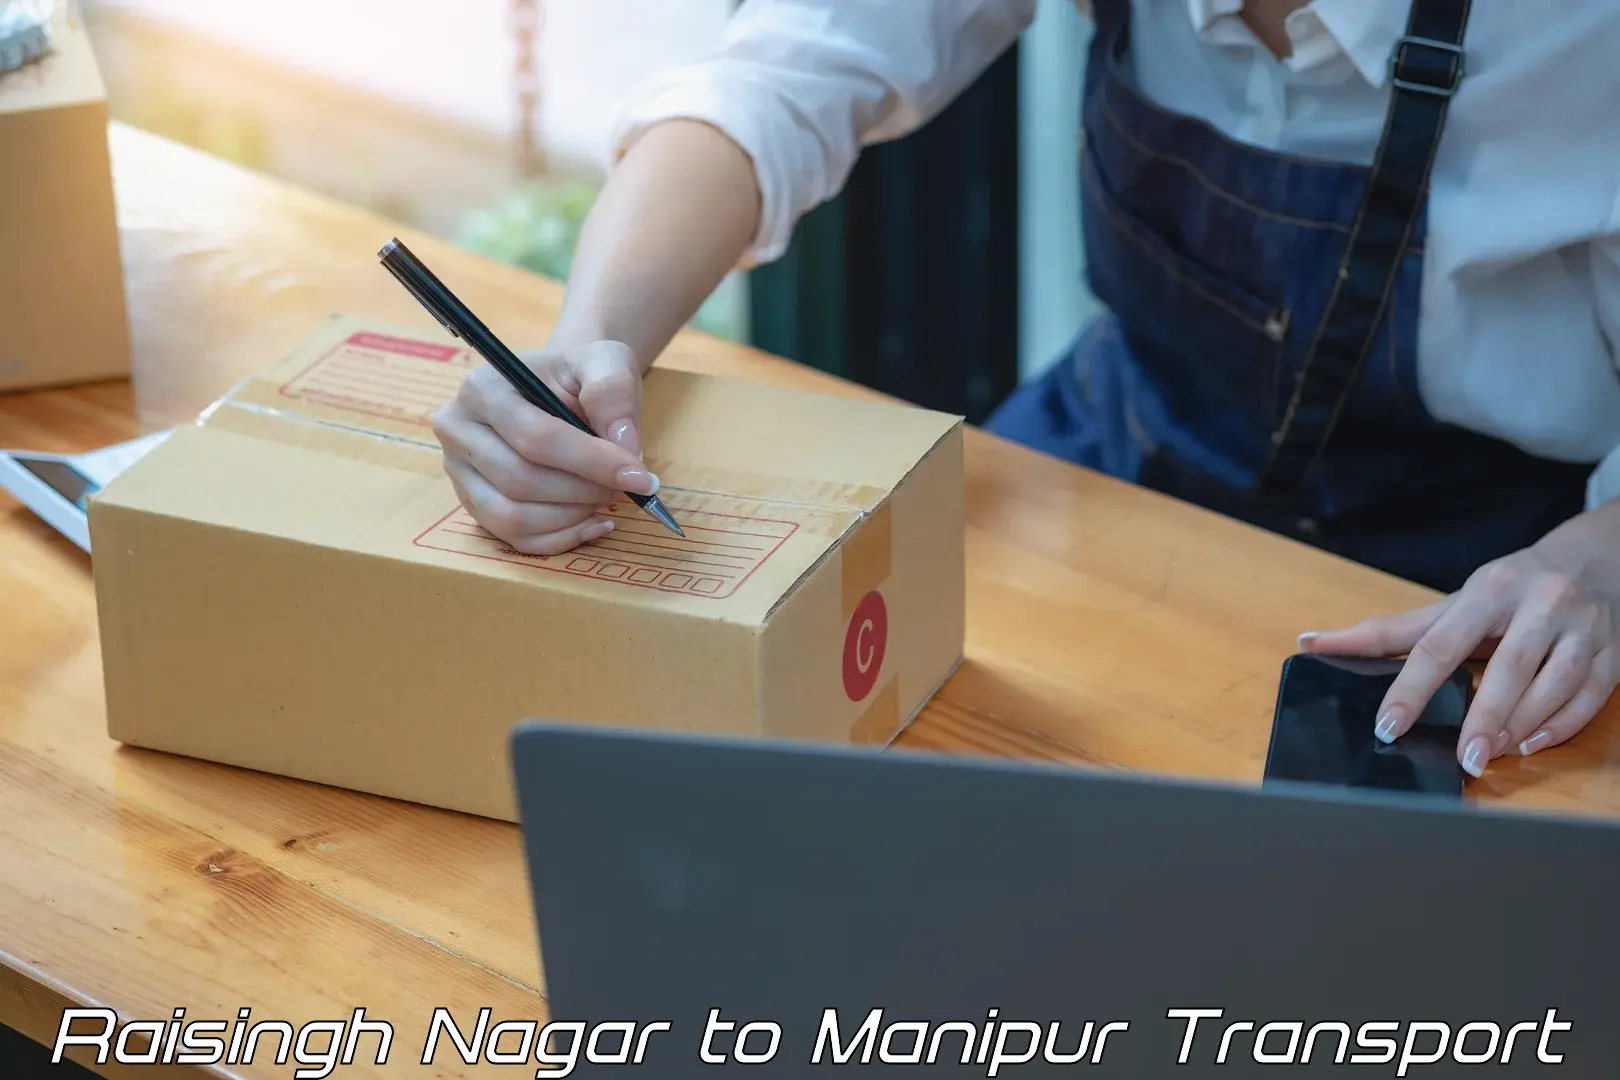 Transportation solution services Raisingh Nagar to Manipur